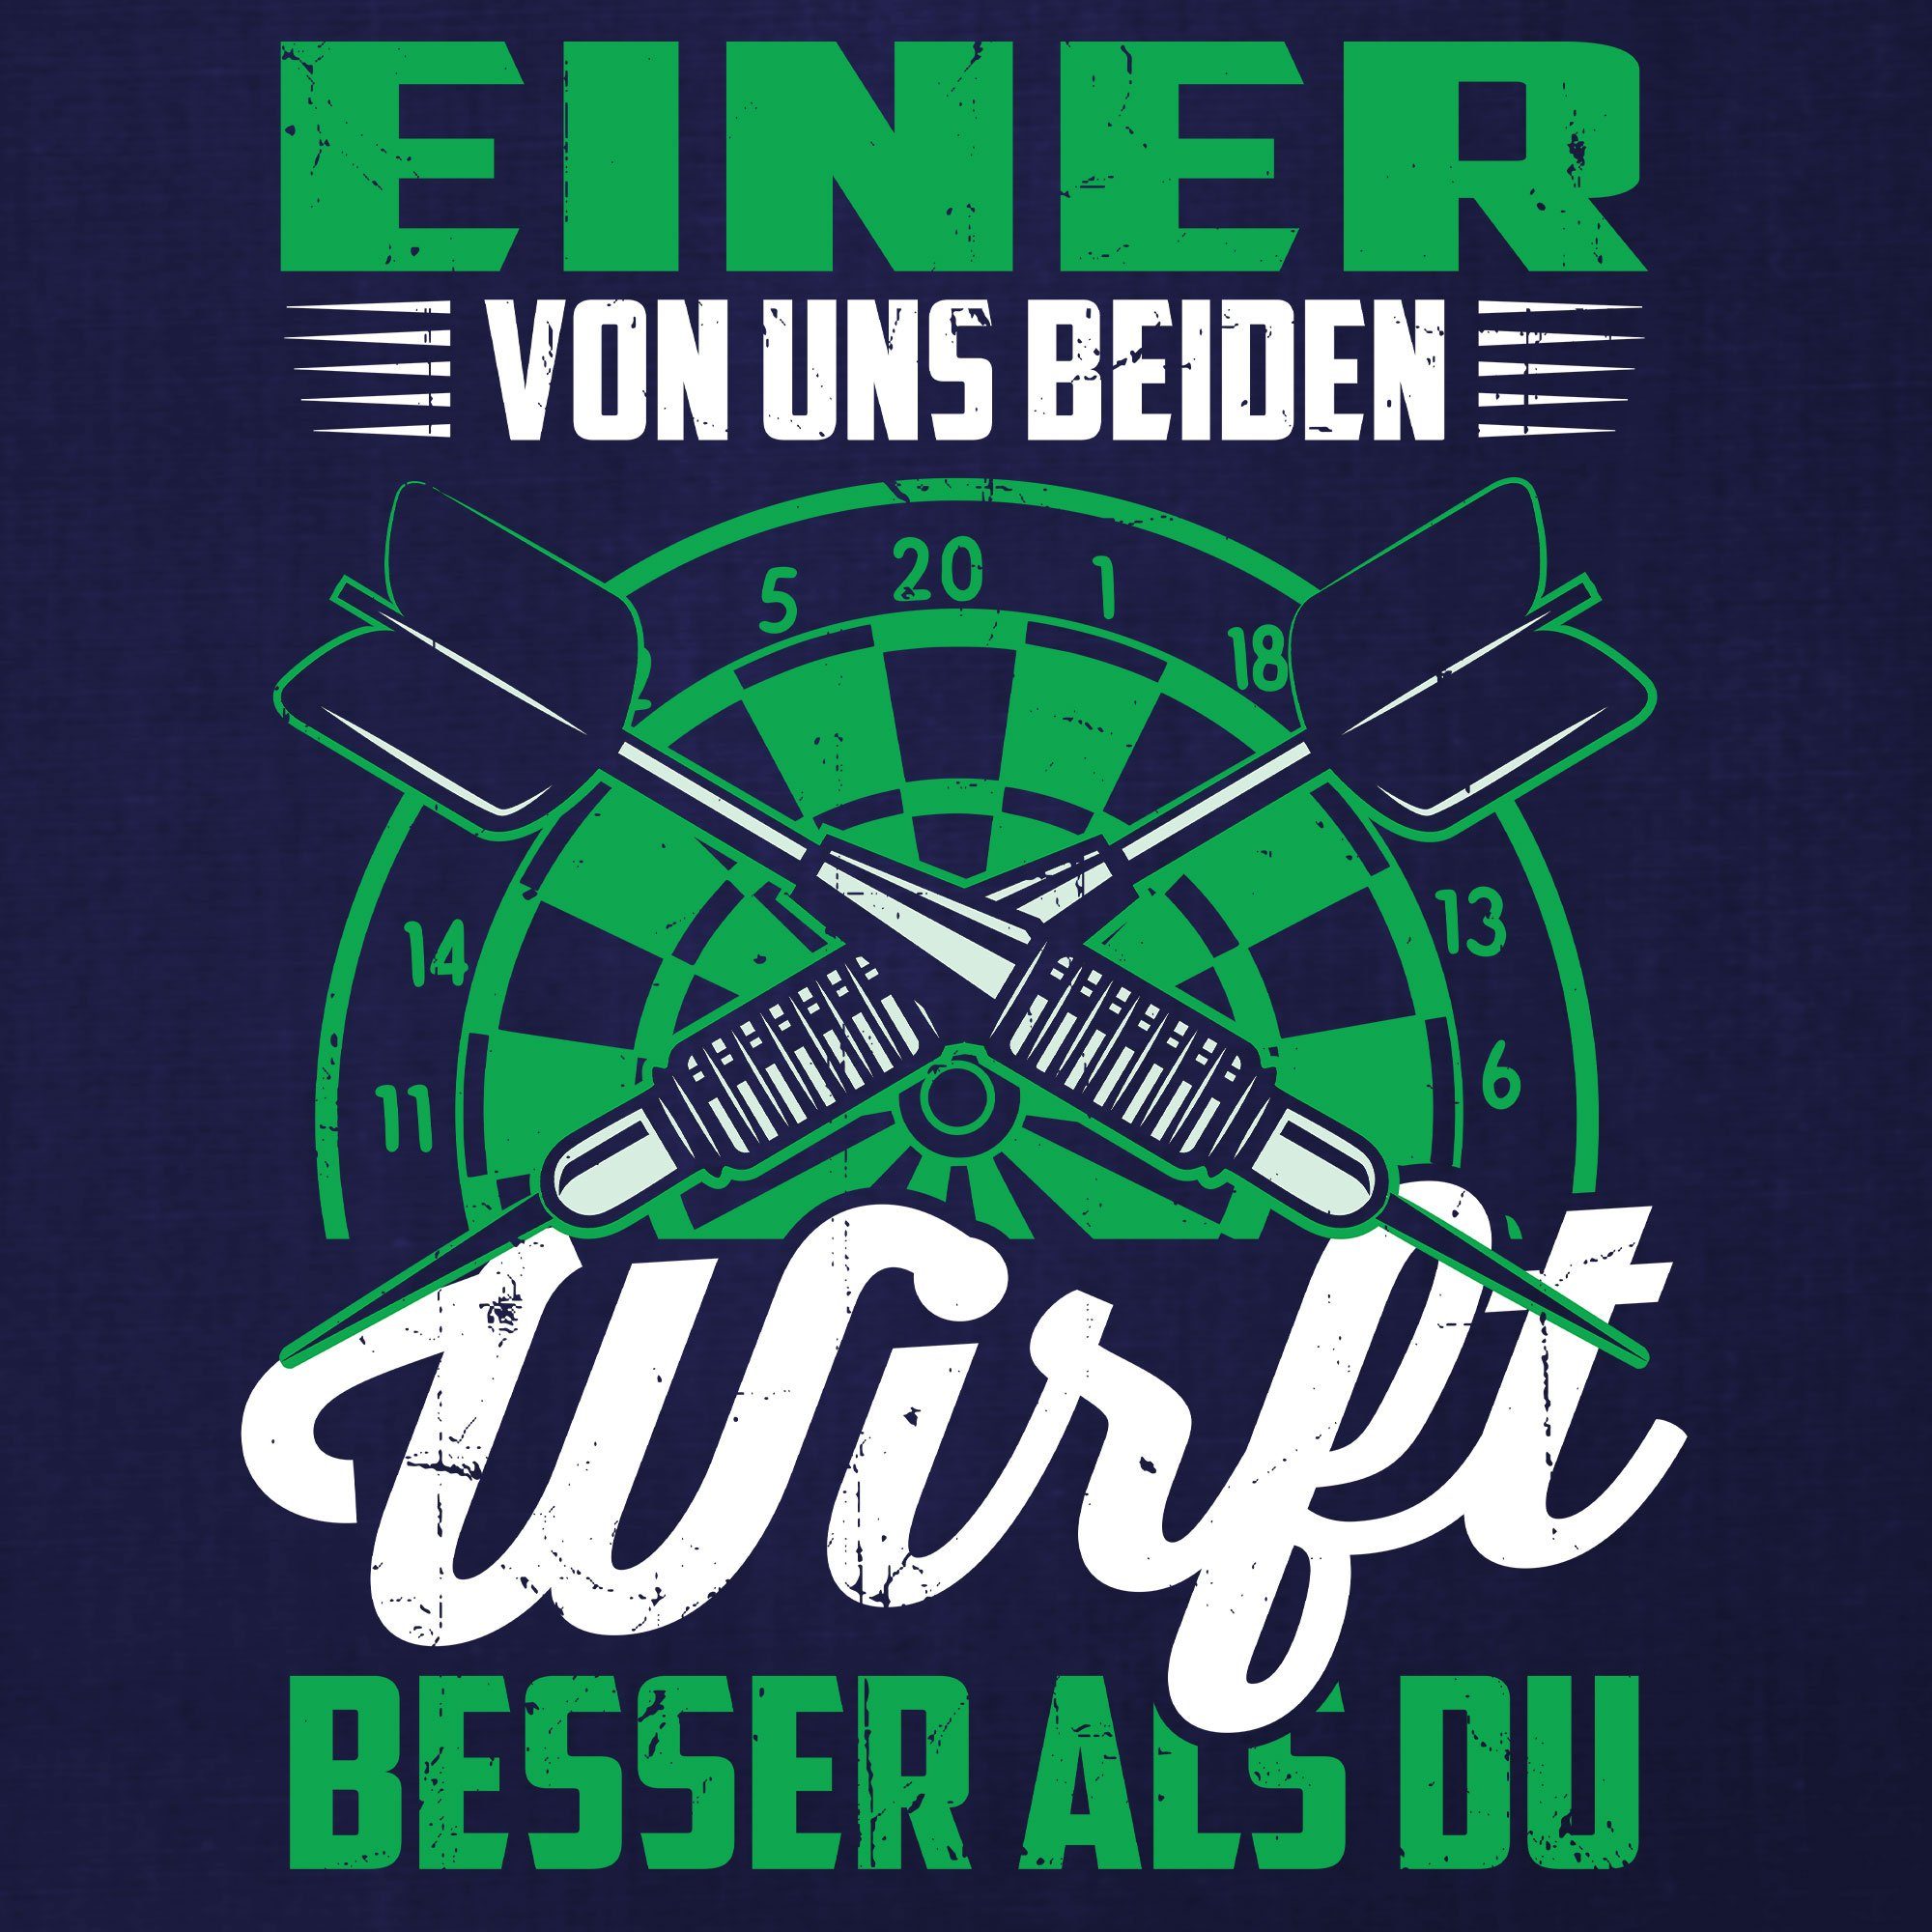 Quattro Dartscheibe Blau Dartpfeil Dartspieler Herren Spruch Dart Formatee (1-tlg) Kurzarmshirt T-Shirt Navy -